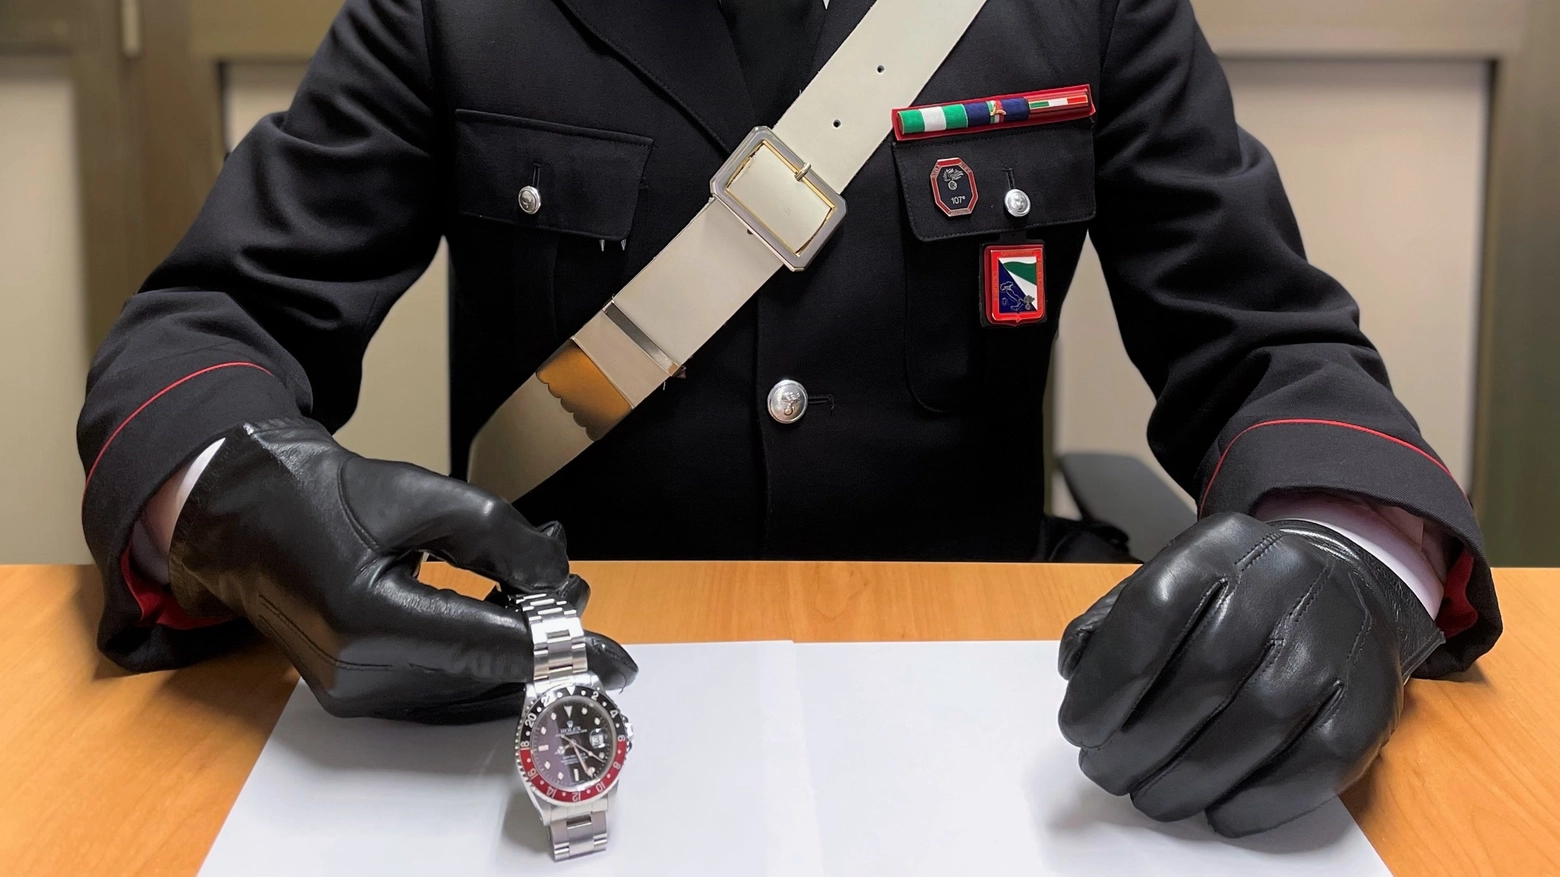 Uno degli orologi recuperati dai carabinieri